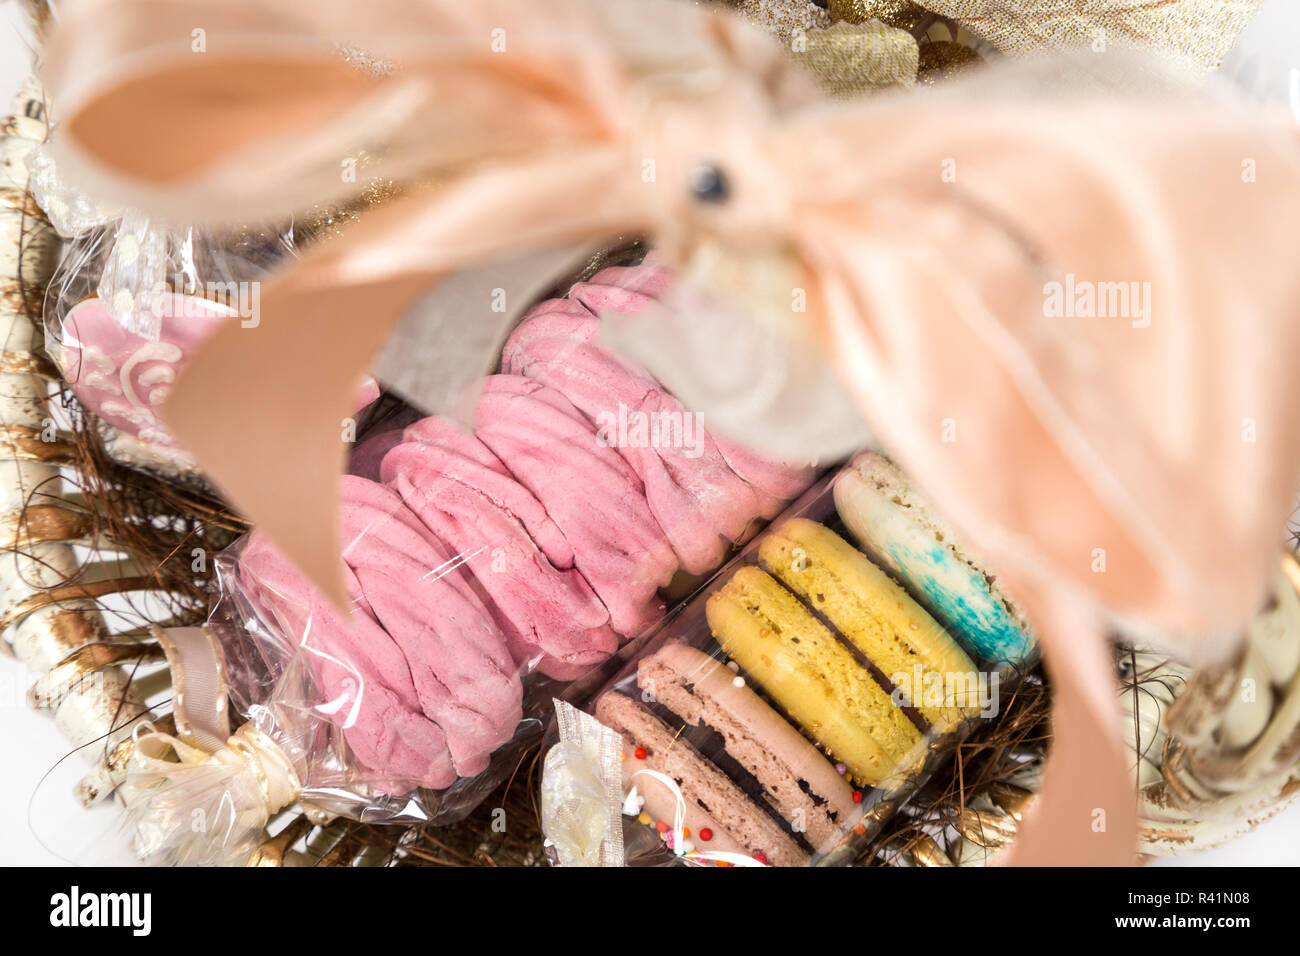 Sweet christmas present dans panier avec pastry Banque D'Images